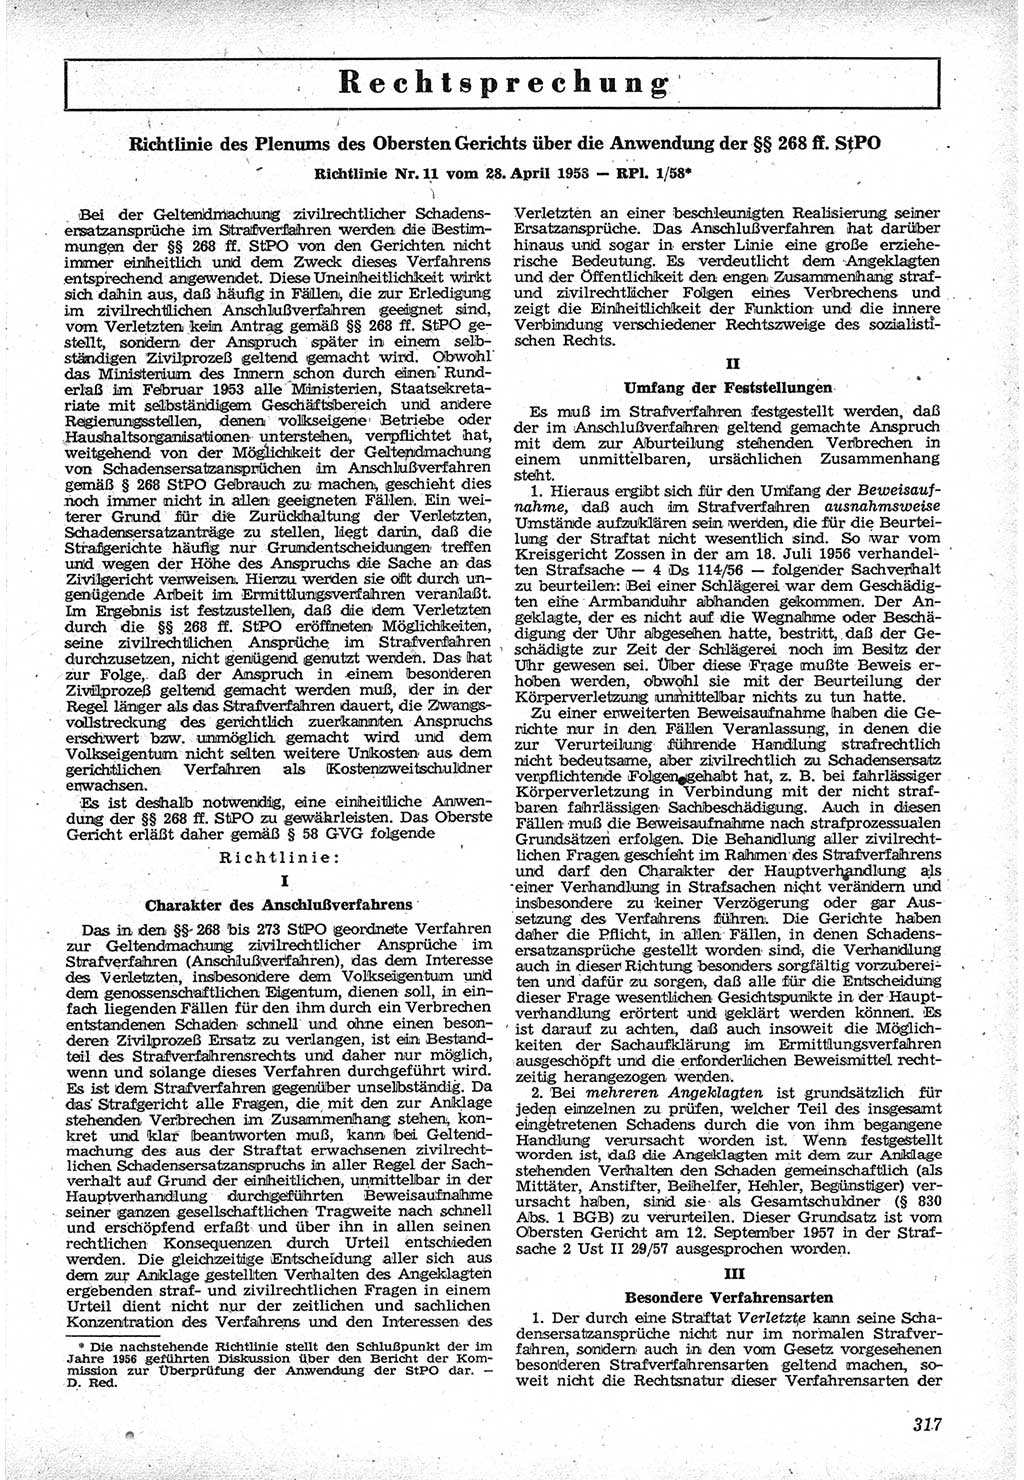 Neue Justiz (NJ), Zeitschrift für Recht und Rechtswissenschaft [Deutsche Demokratische Republik (DDR)], 12. Jahrgang 1958, Seite 317 (NJ DDR 1958, S. 317)